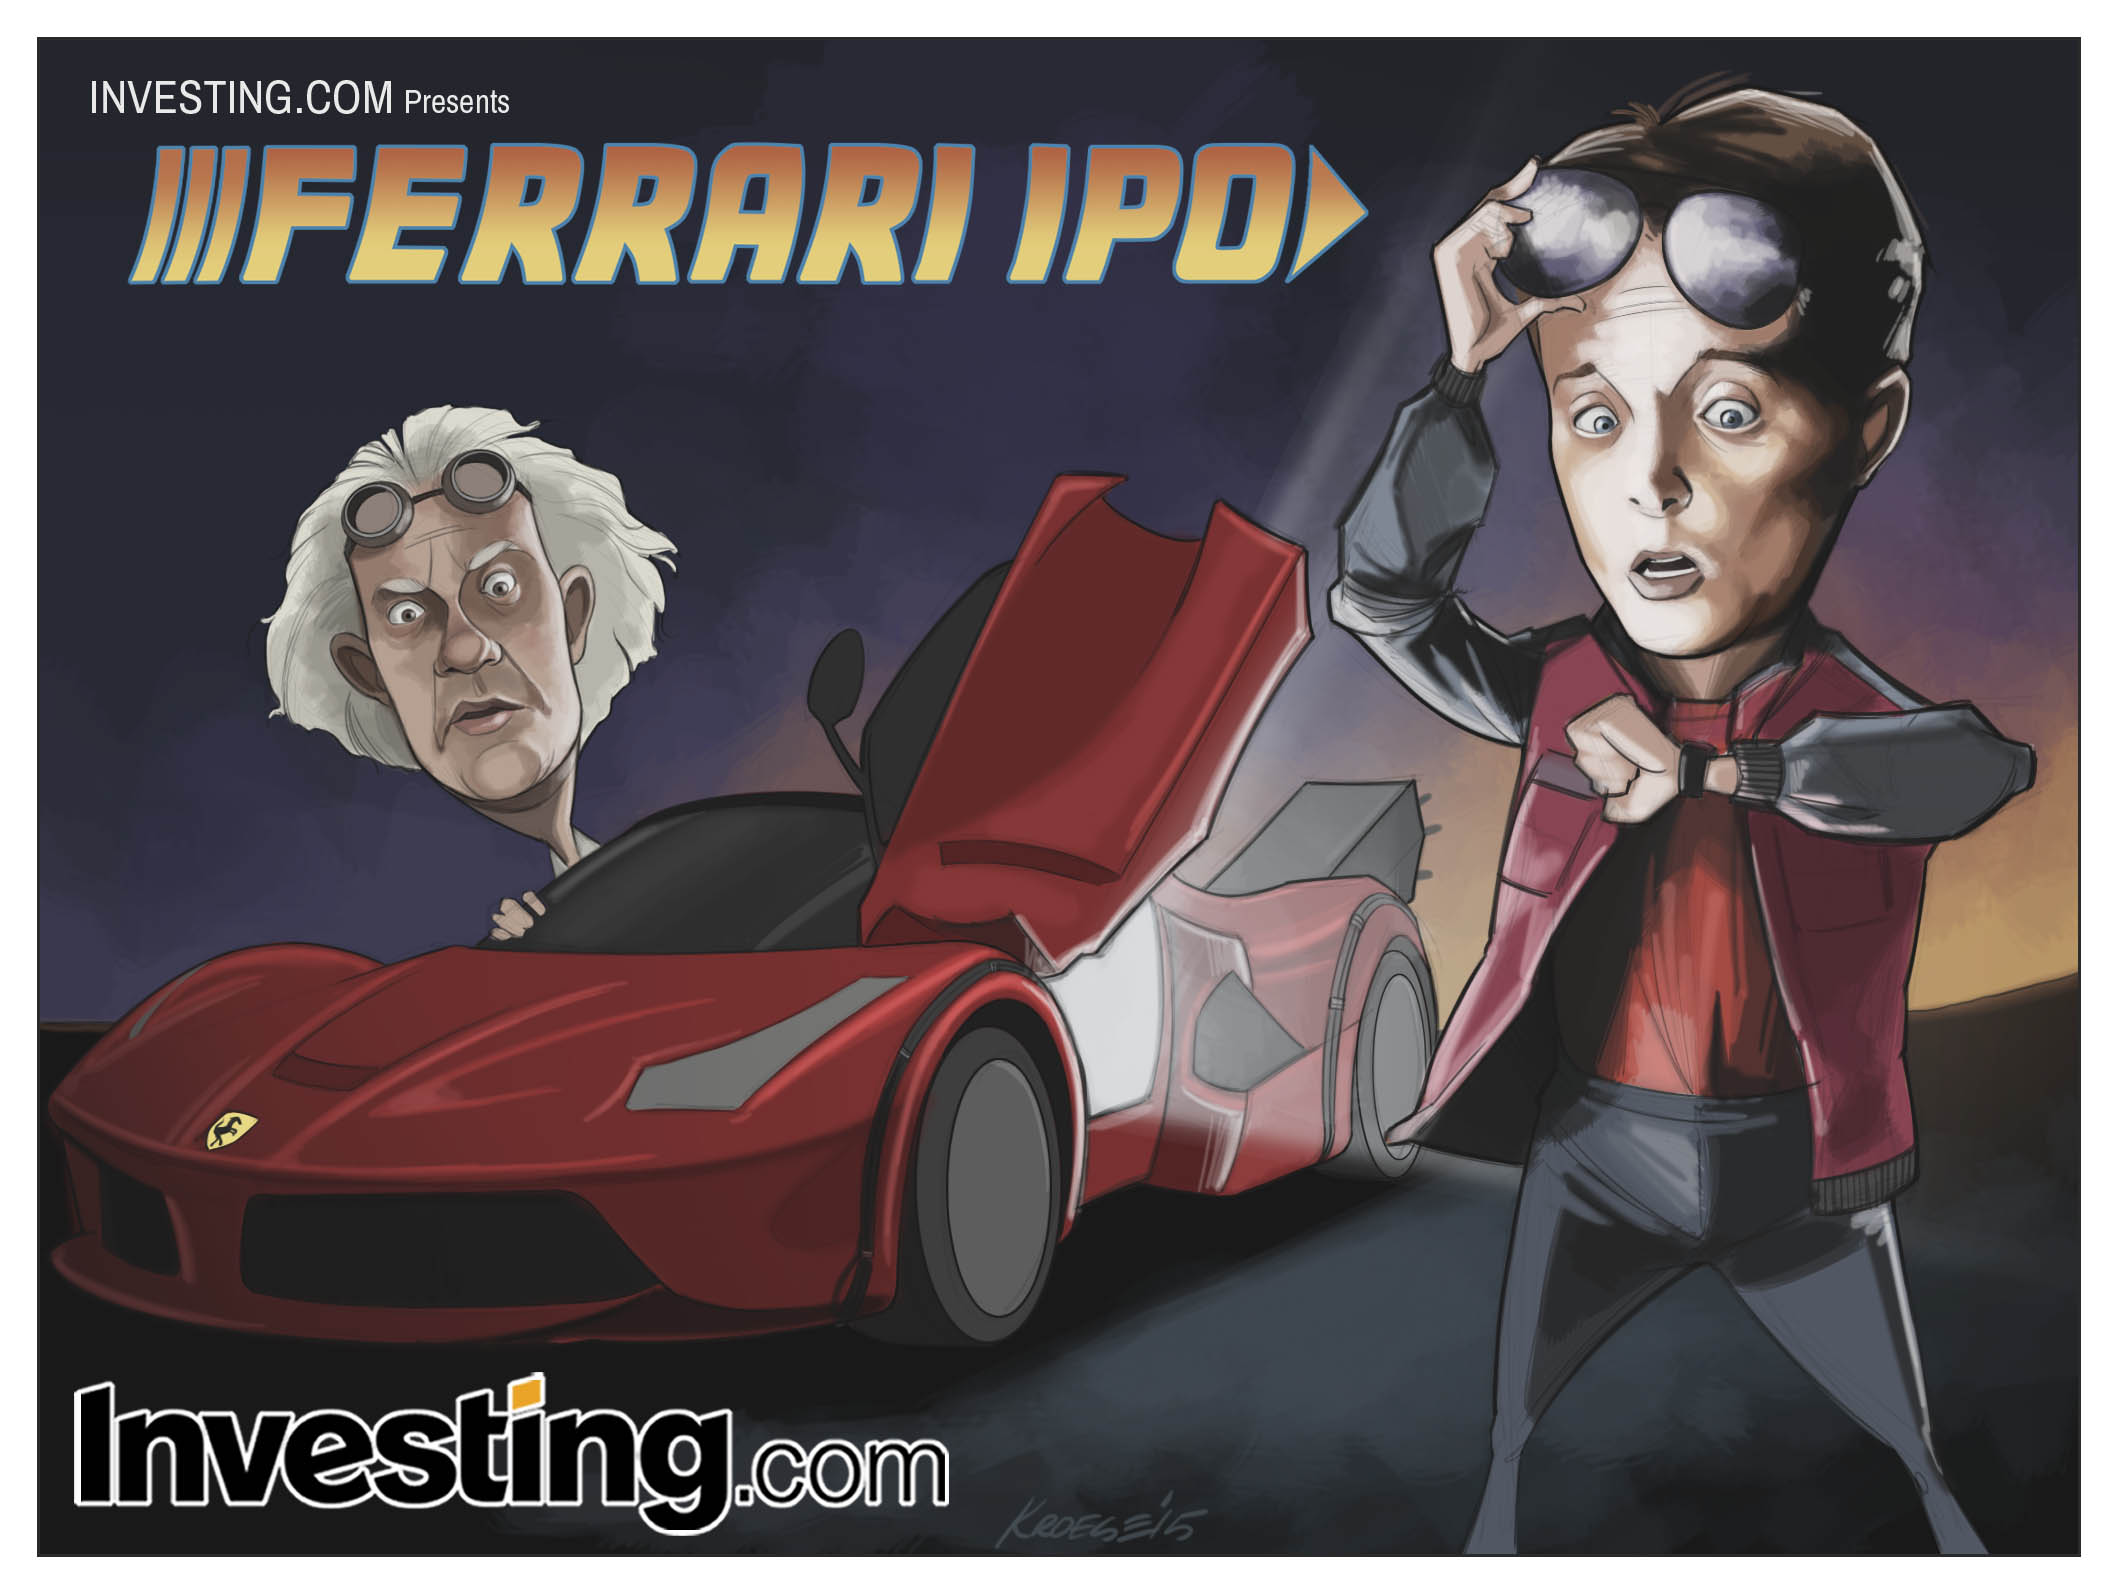 El viaje al futuro de Ferrari comienza con su debut en Wall Street